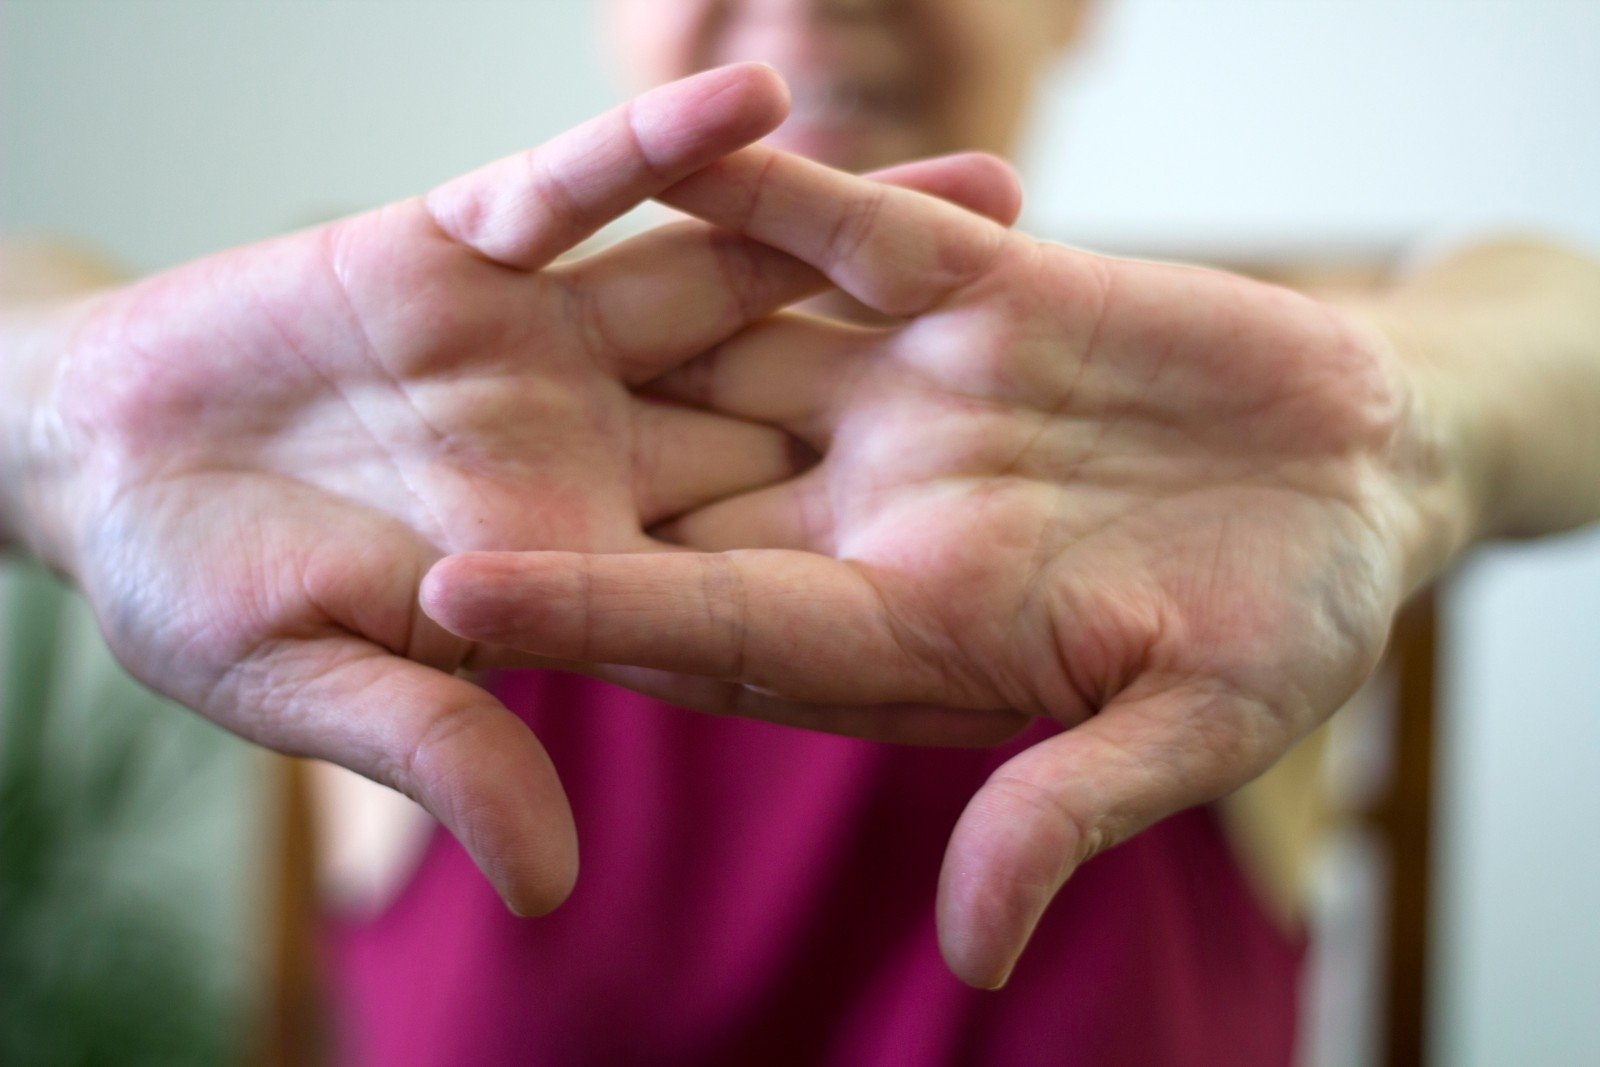 ligos nuo rankų sąnarių kaulų gydymas artrozė rankas liaudies gynimo